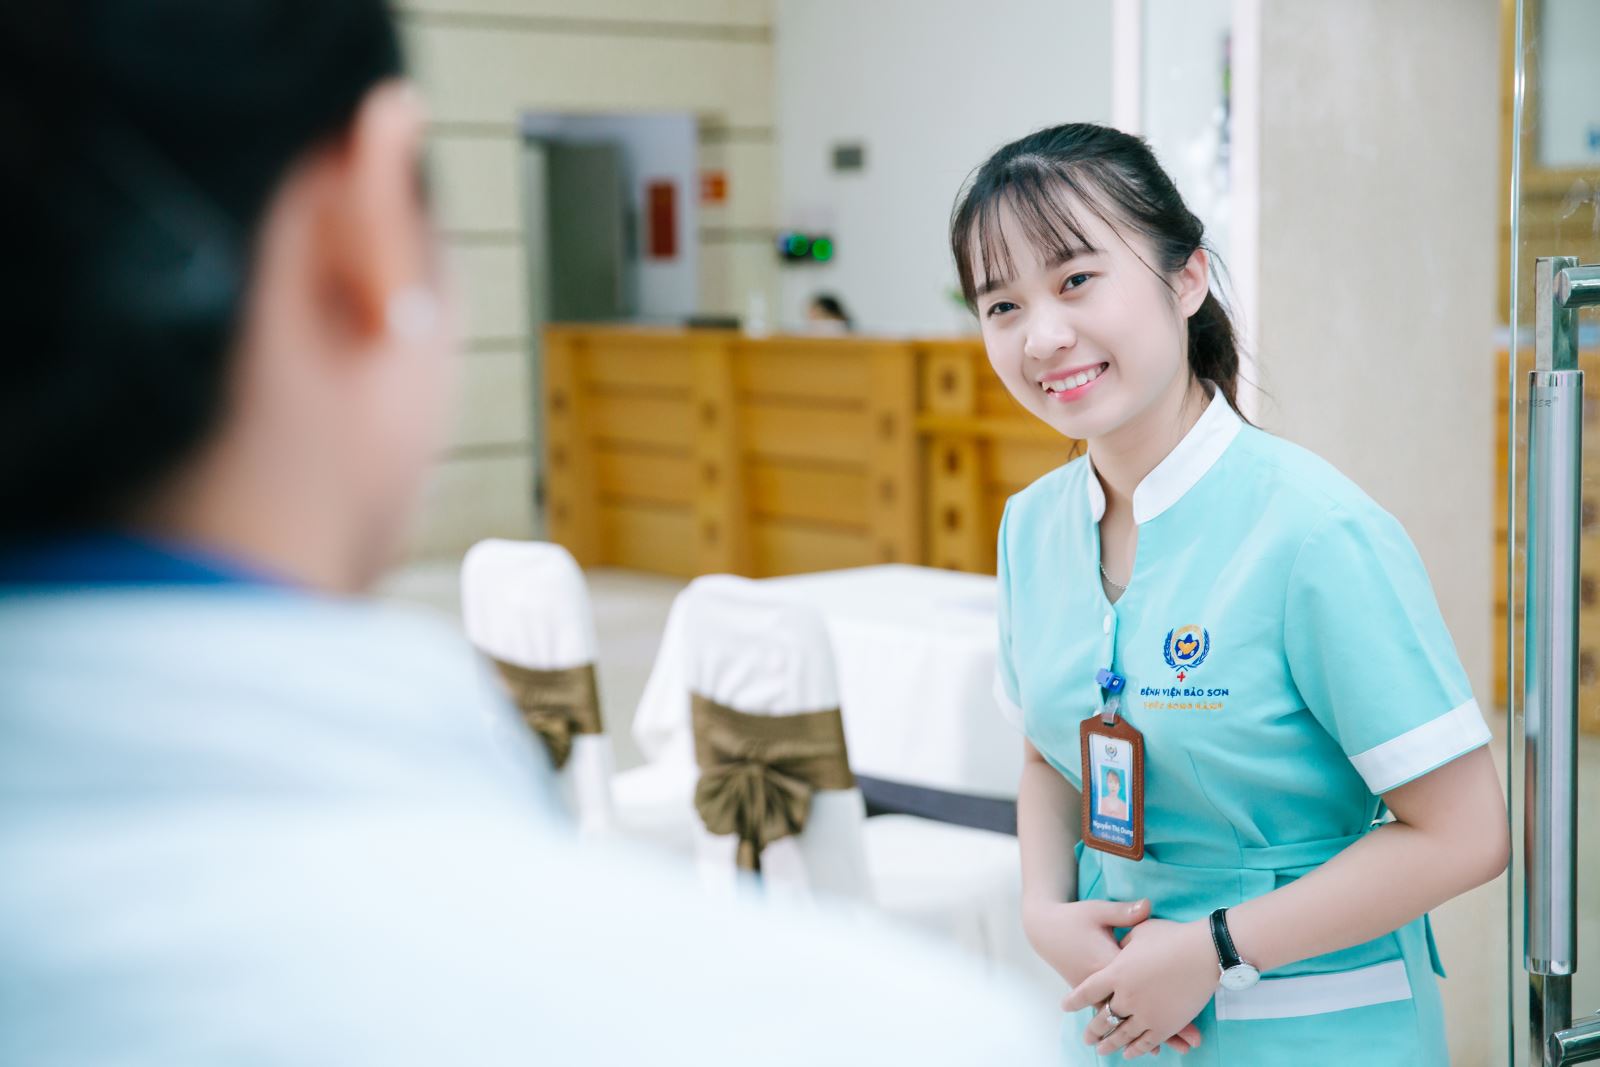 Điều phối viên chăm sóc bệnh nhân một trong những vị trí được tuyển dụng chăm sóc khách hàng bệnh viện nhiều nhất hiện nay